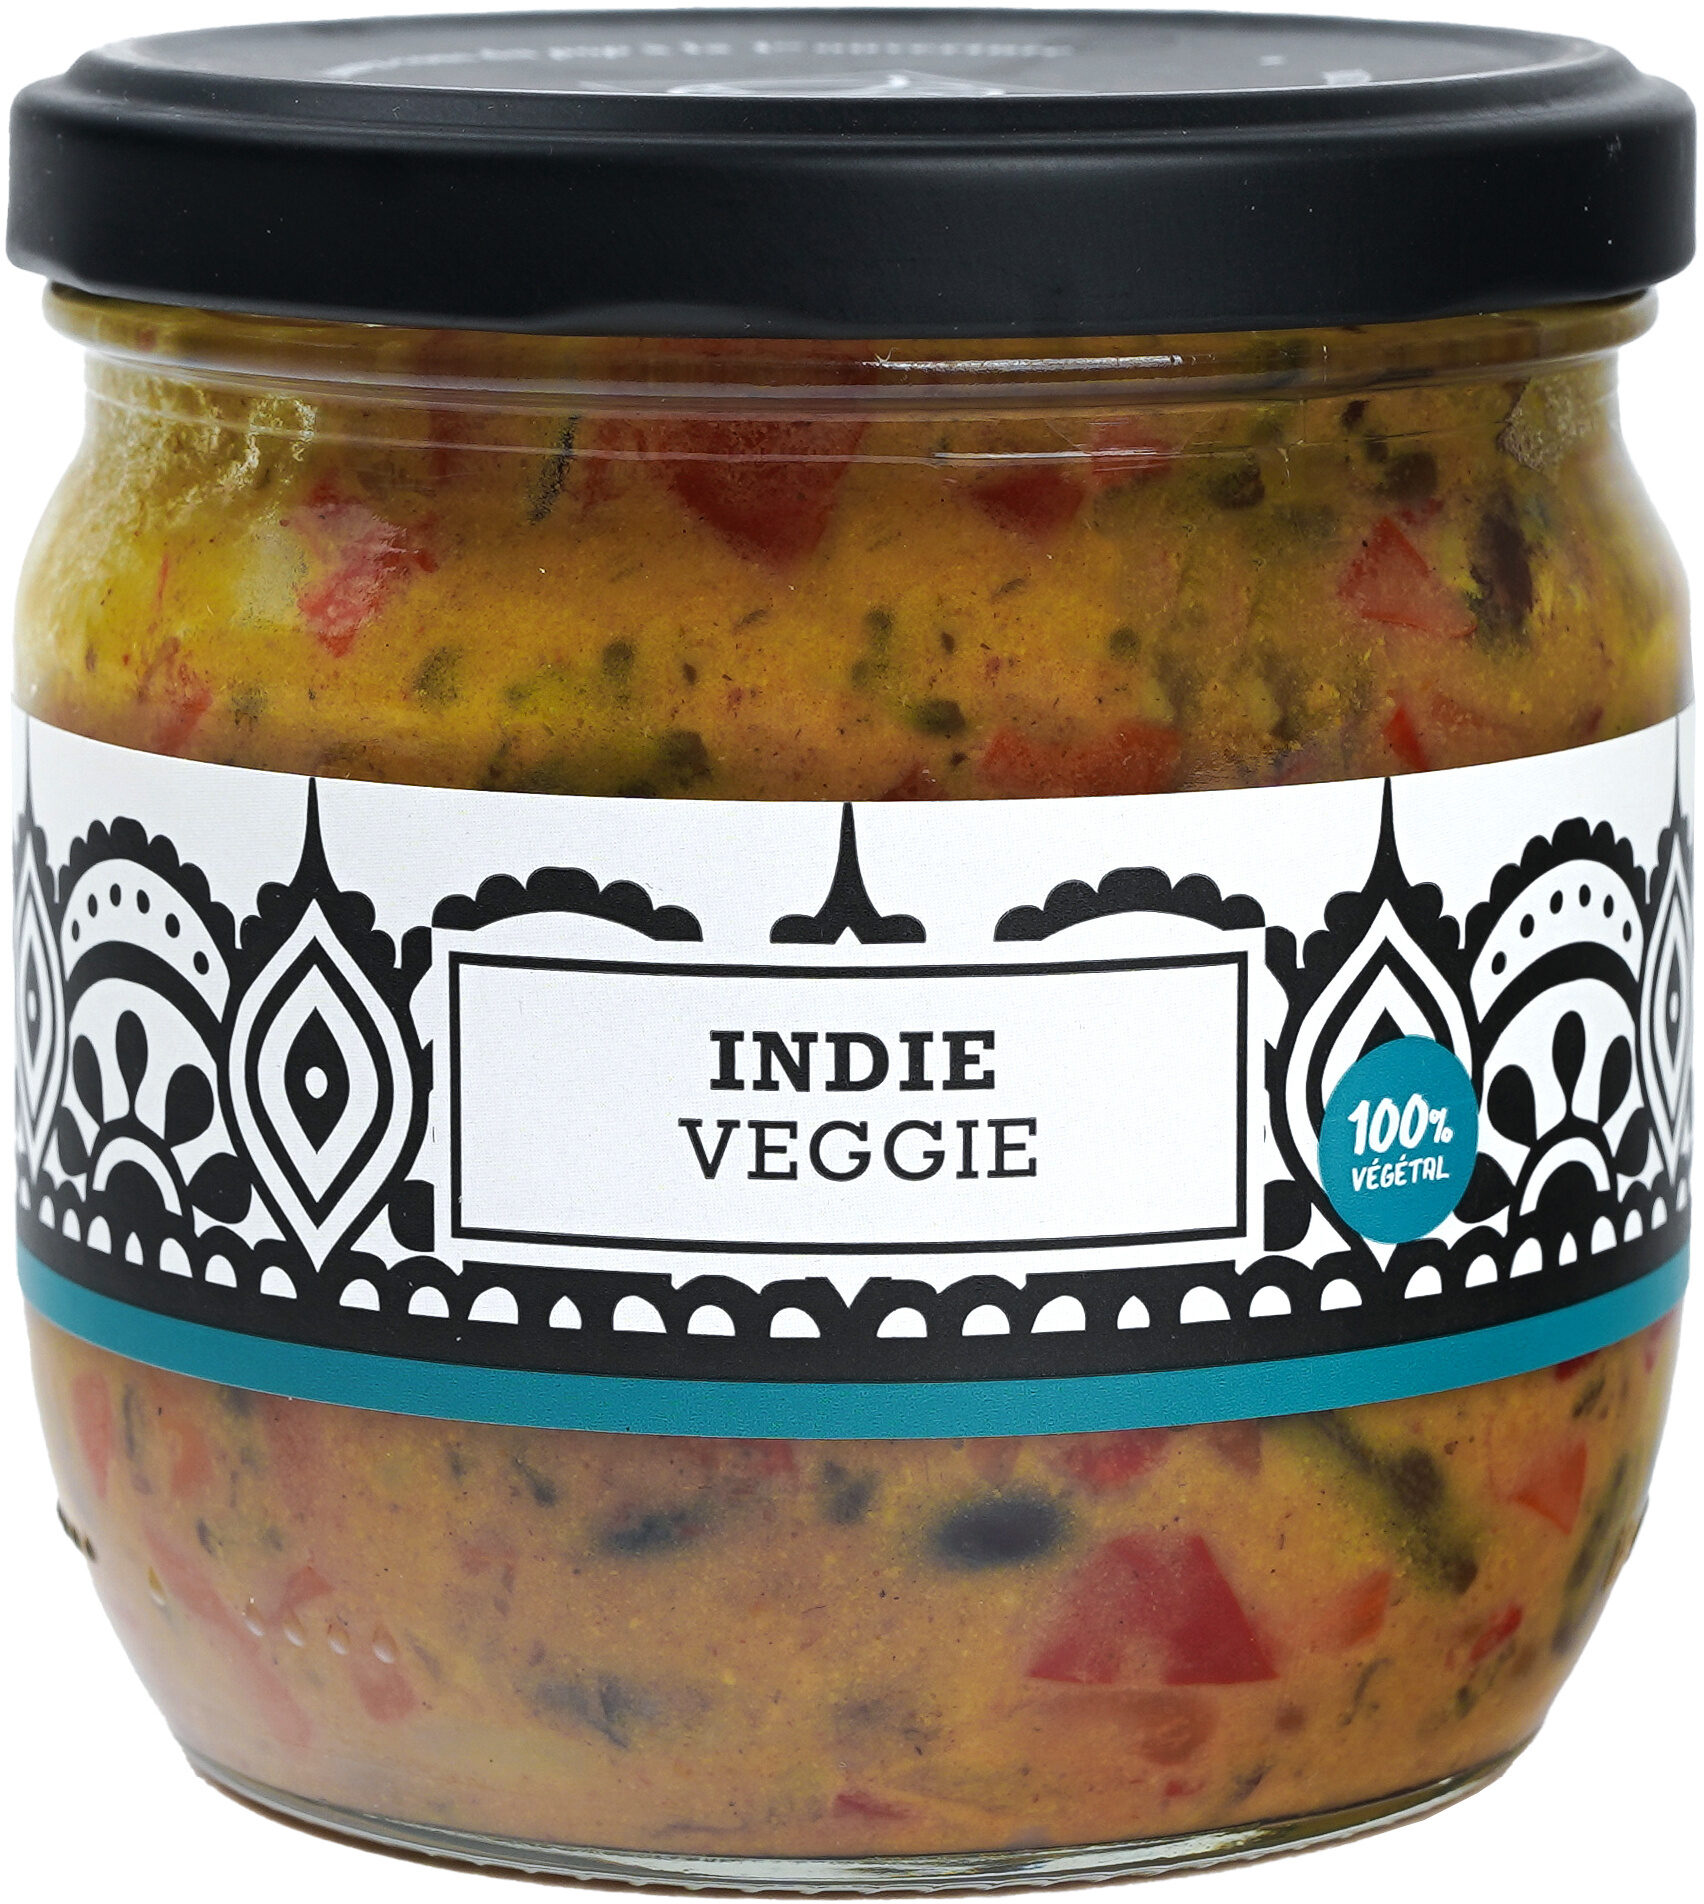 Indie veggie - Product - fr